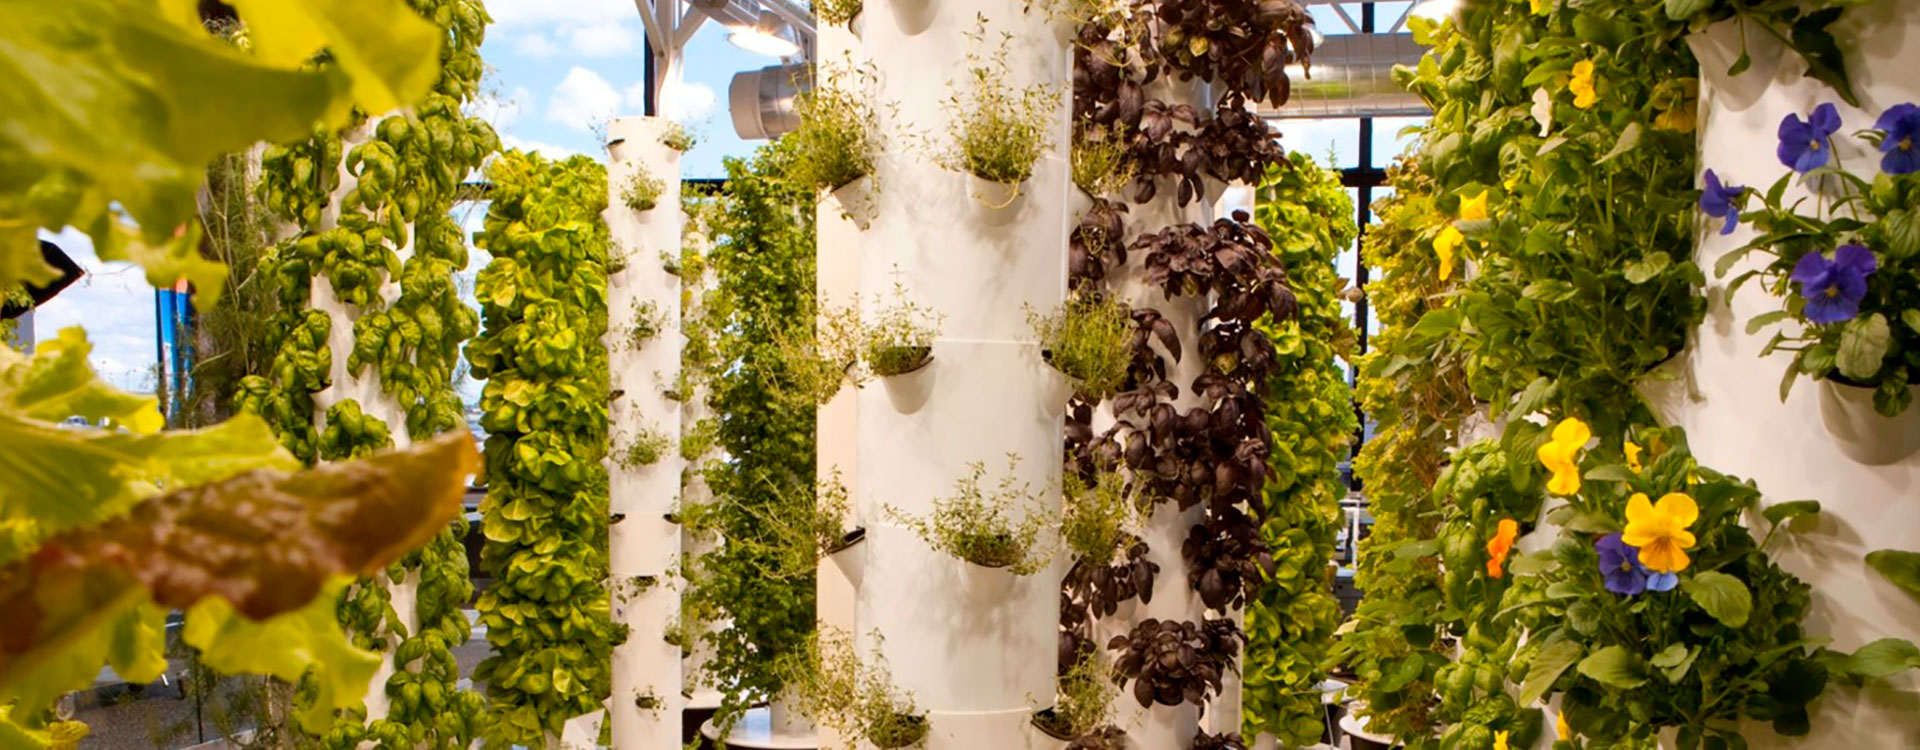 Scorcio di un giardino urbano, con colonne bianche, rampicanti e vasi disposti verticalmente lungo le colonne.